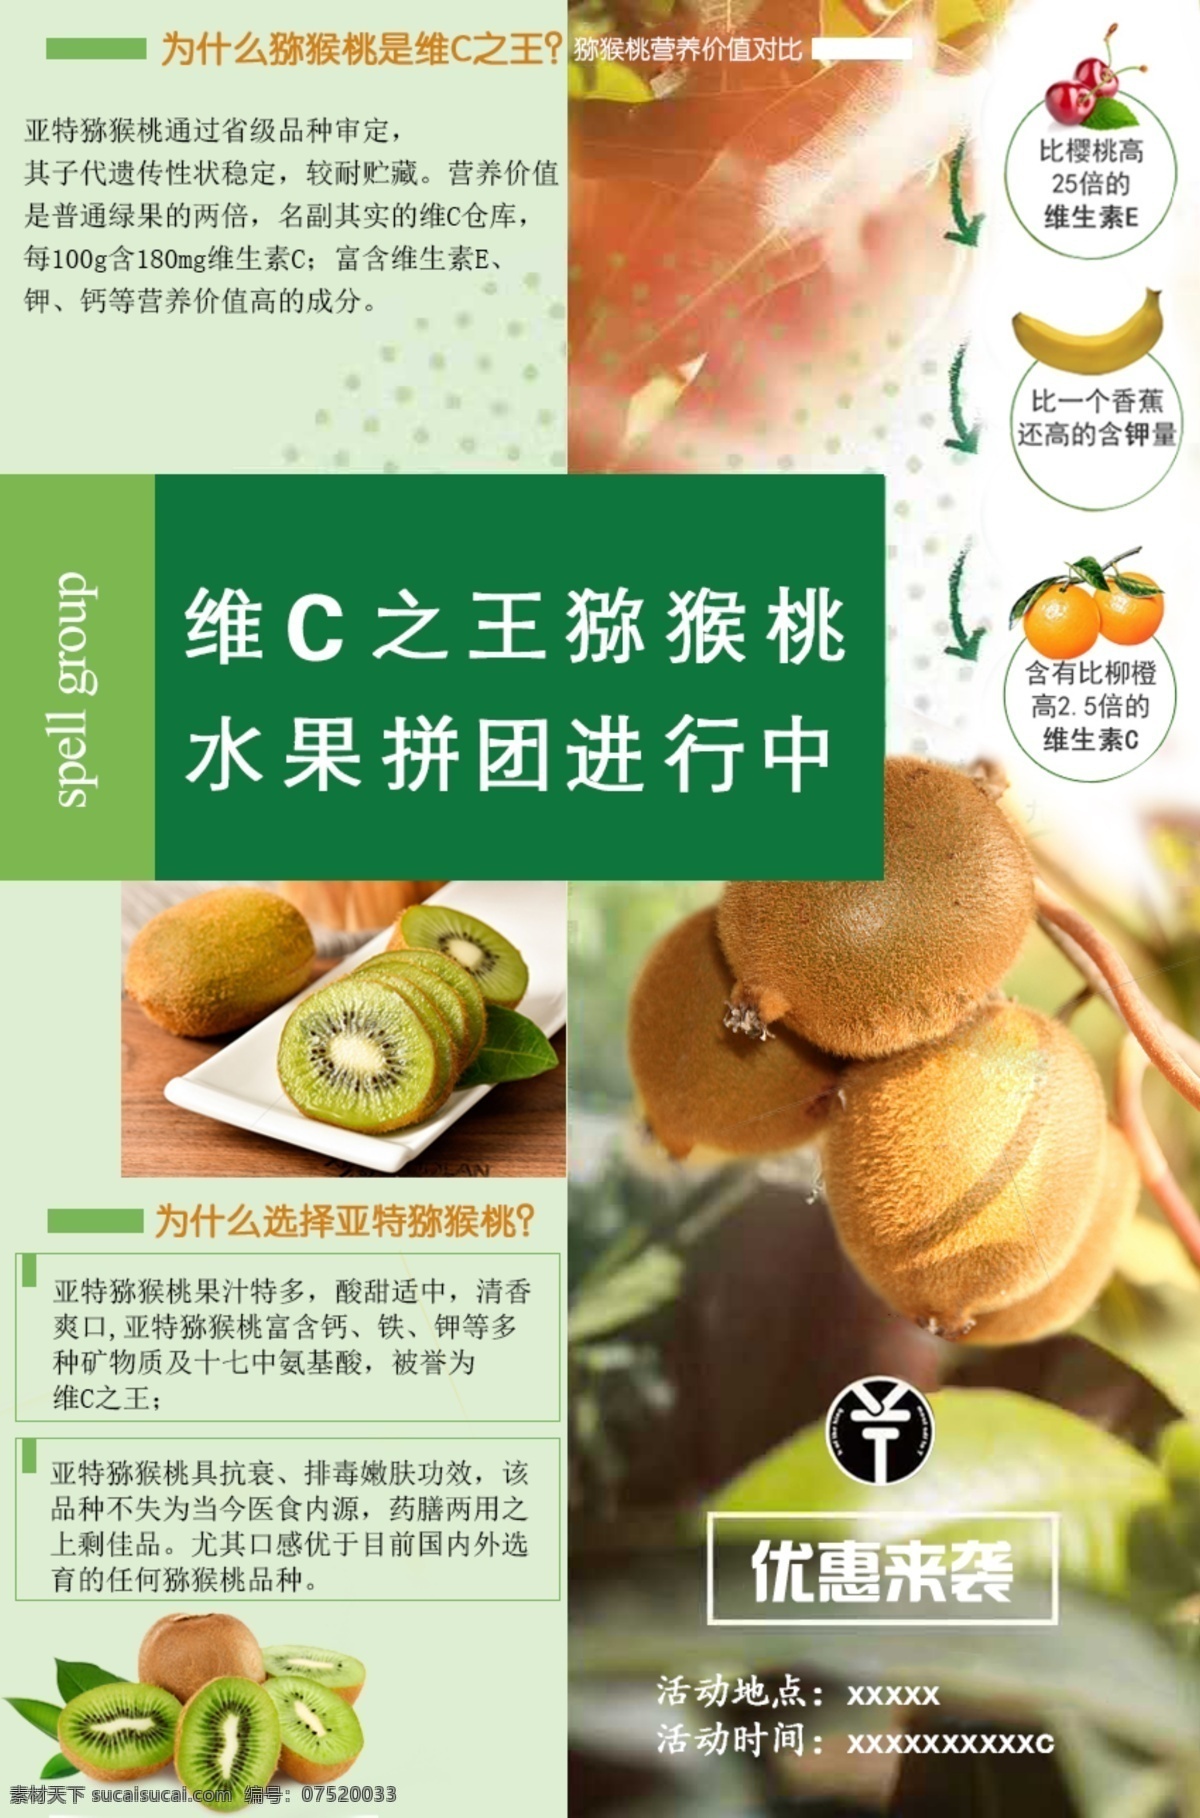 亚特 猕猴桃 水果拼团 知识 普及 猕猴桃树叶 营养 价值 维c之王 樱桃 香蕉 橙子 绿色食品 海报